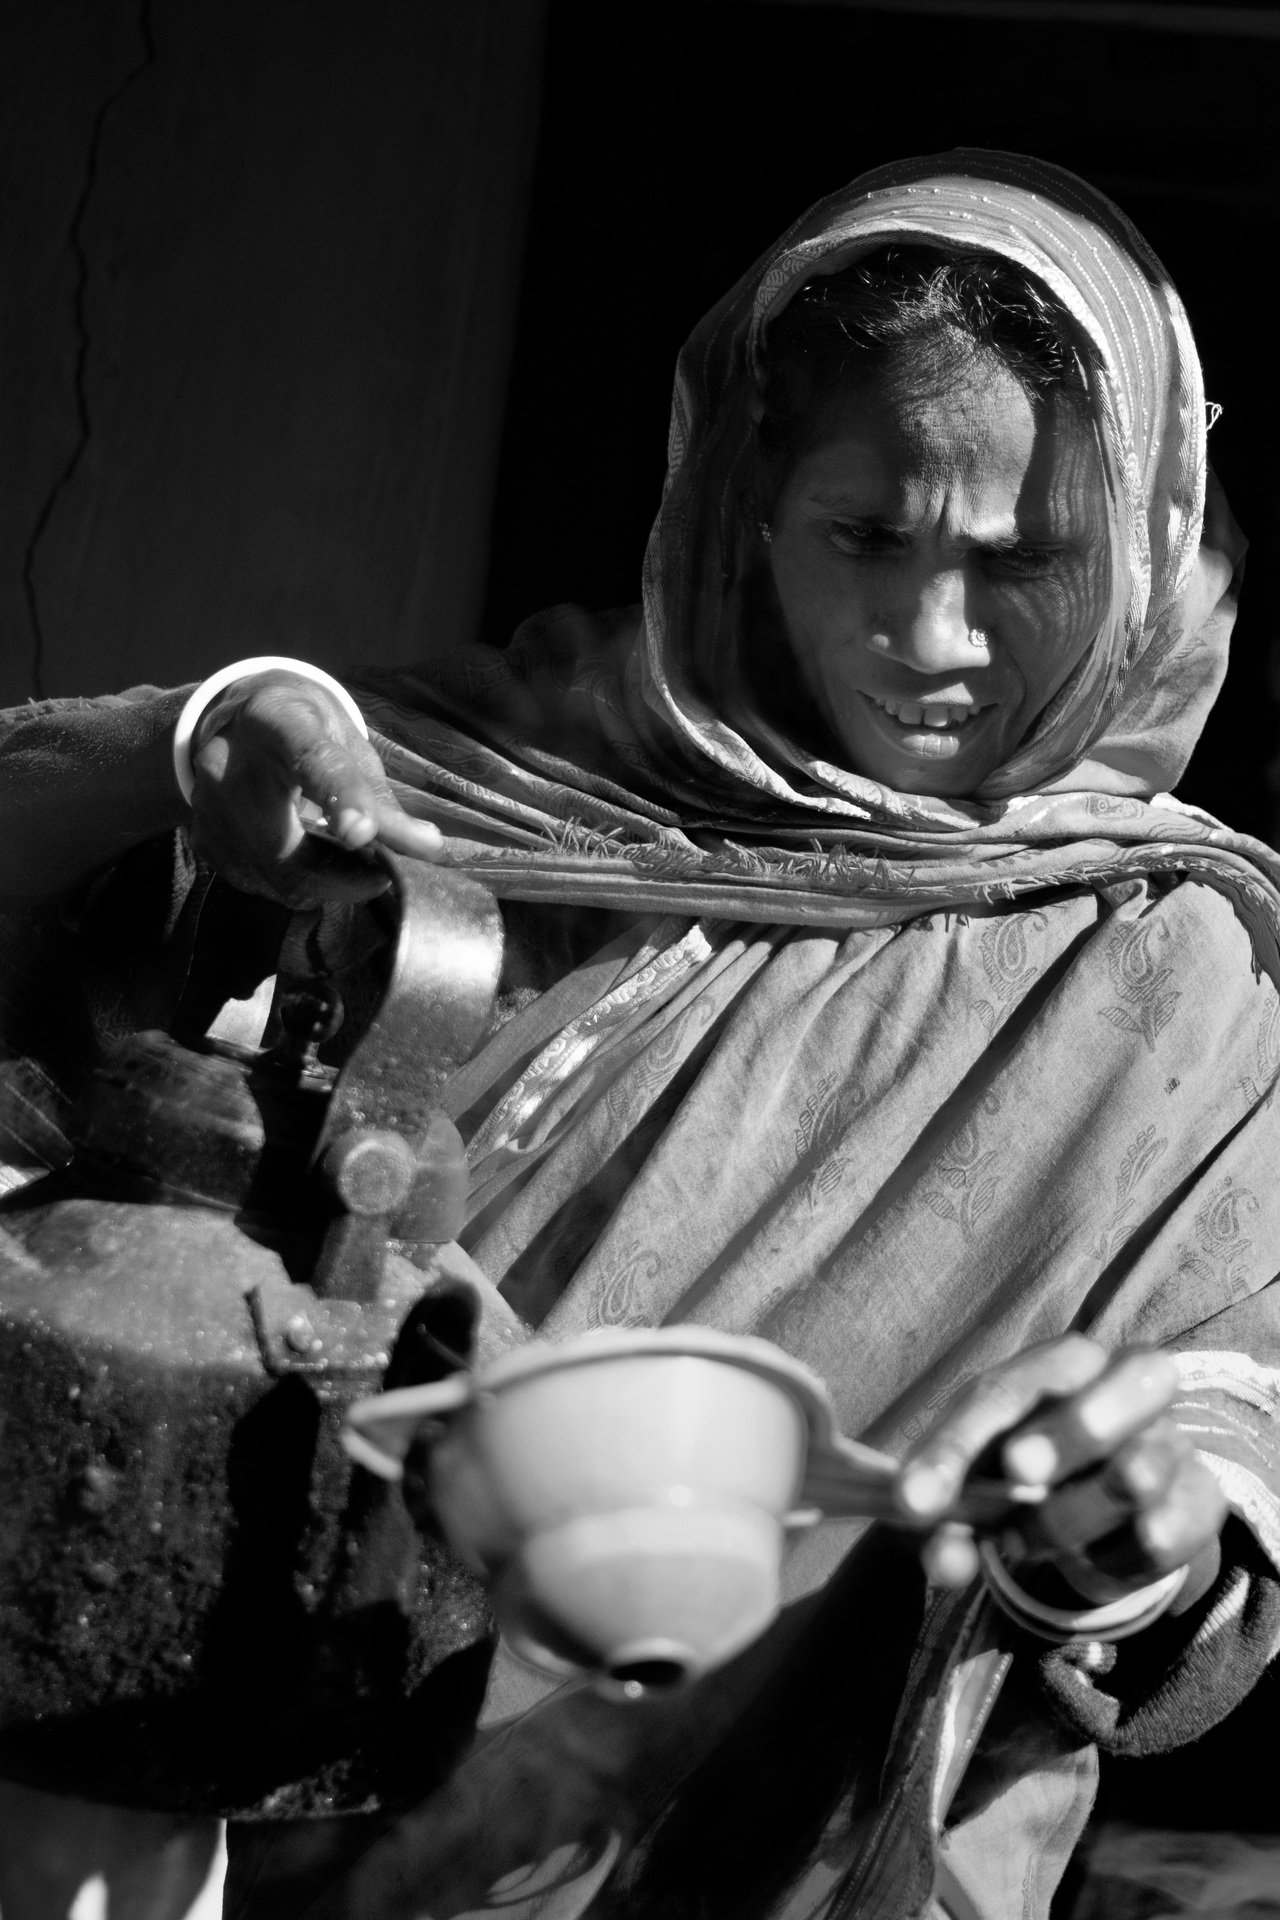 Bangladesh: Tea Server